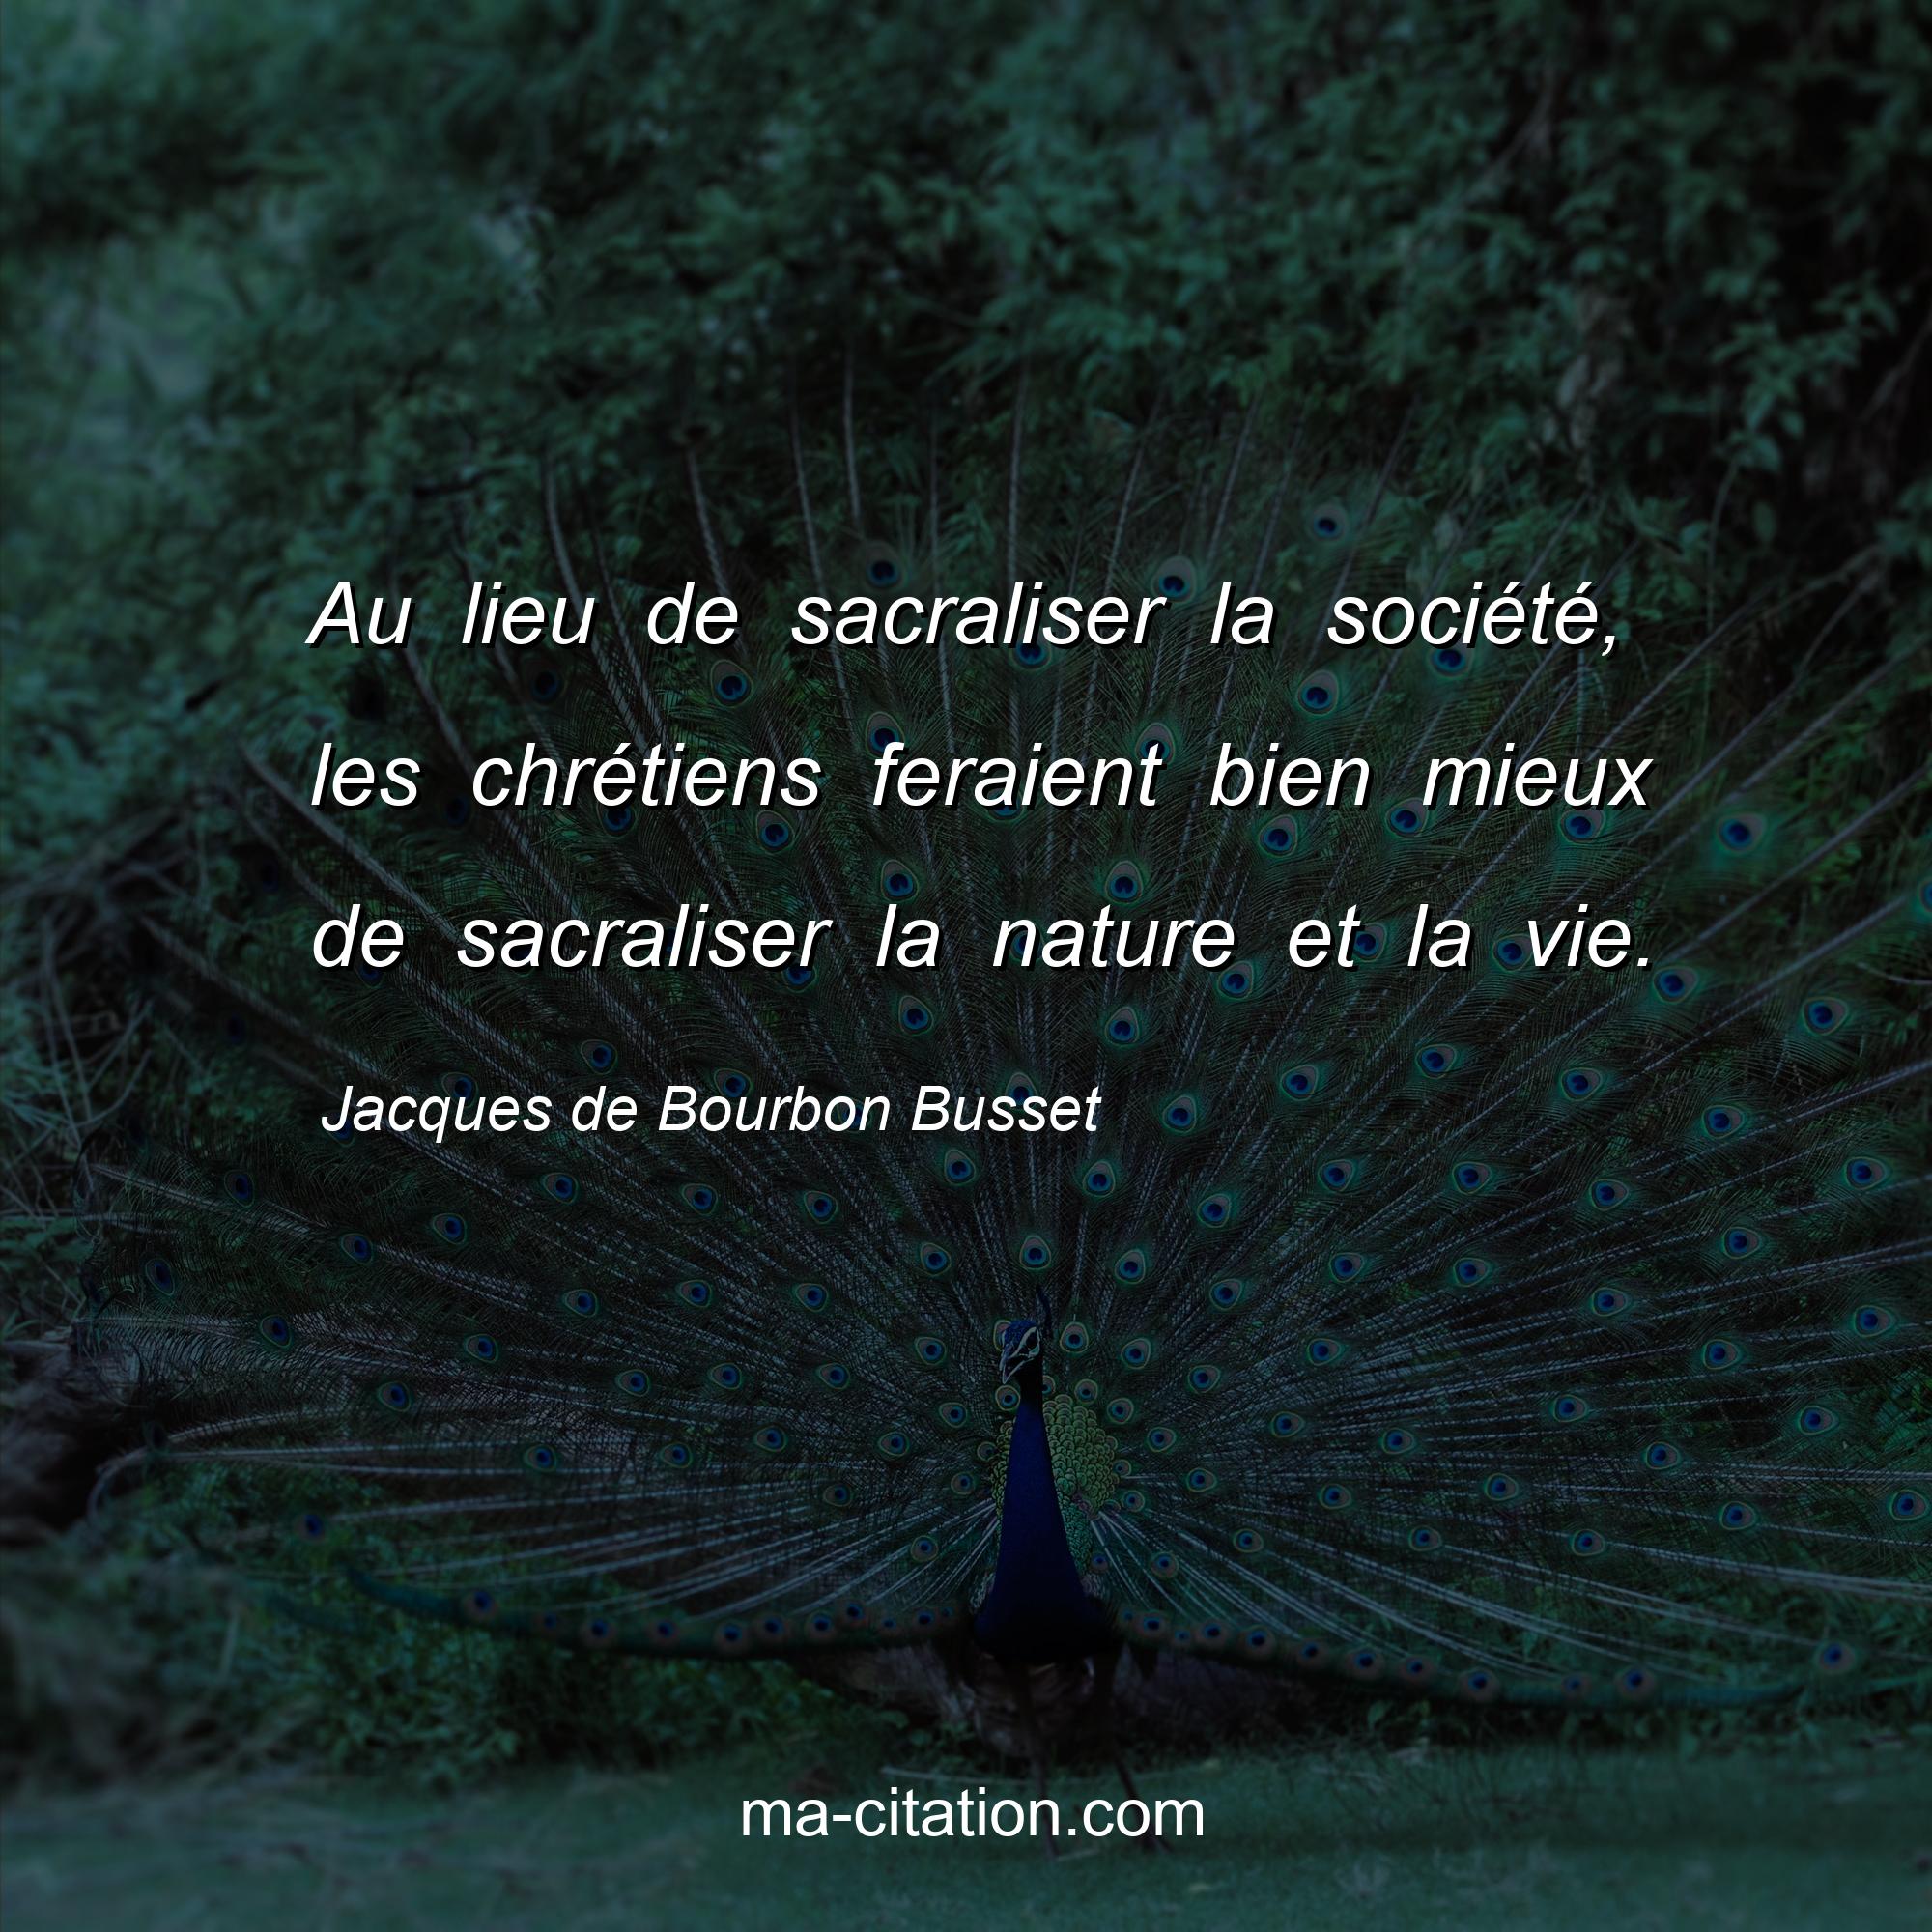 Jacques de Bourbon Busset : Au lieu de sacraliser la société, les chrétiens feraient bien mieux de sacraliser la nature et la vie.